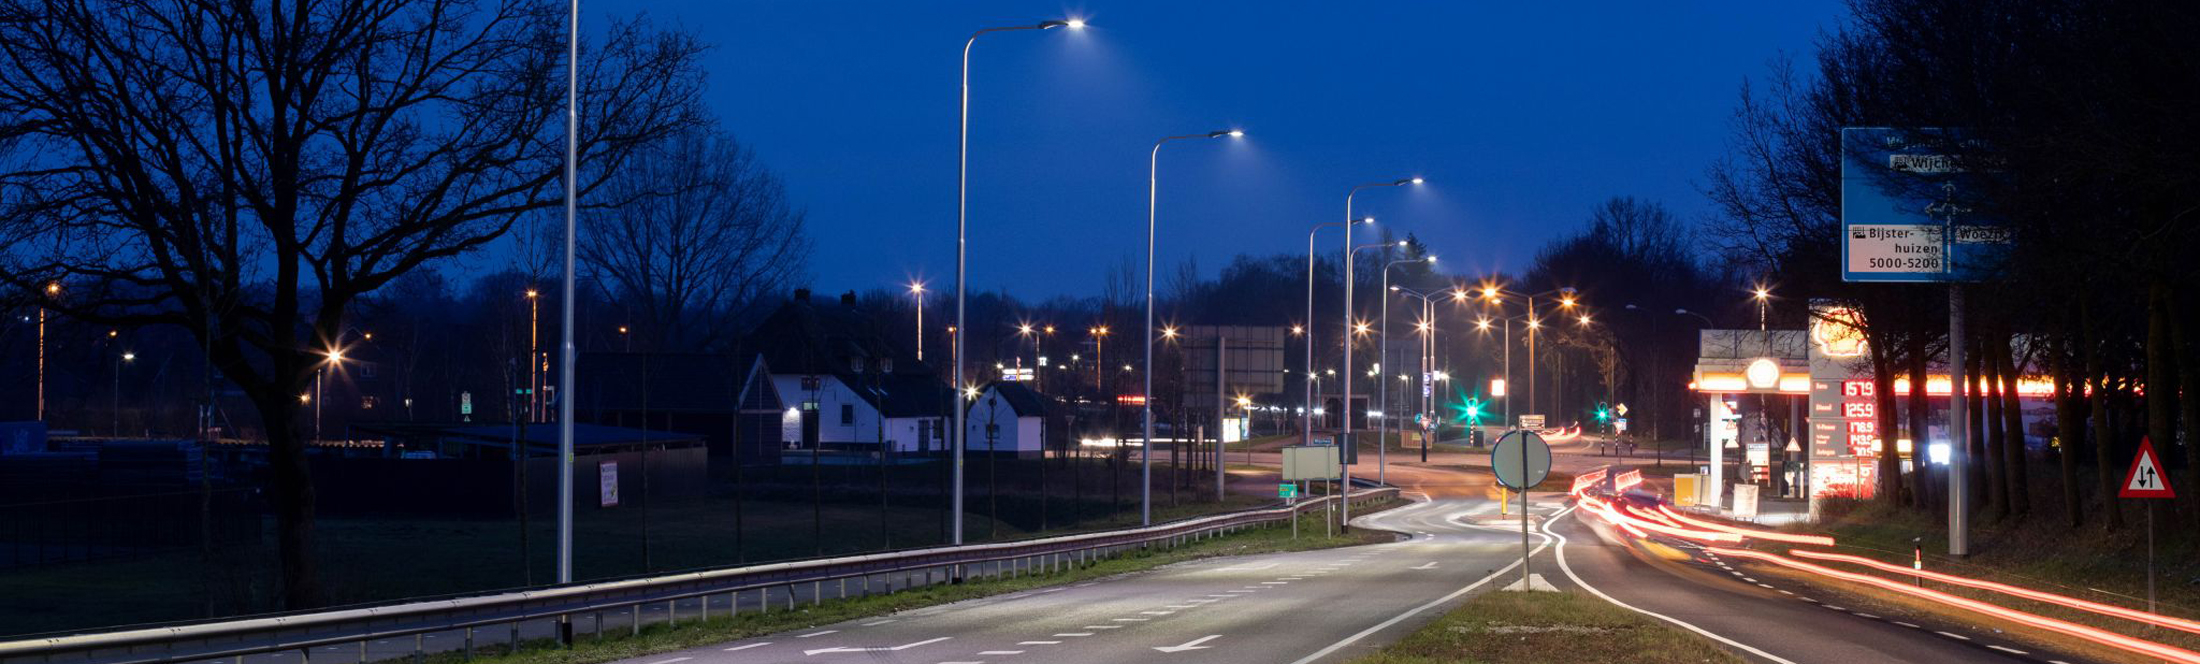 Luminarias quantum alumbran el camino entre Beuningen y Winchen en Países Bajos